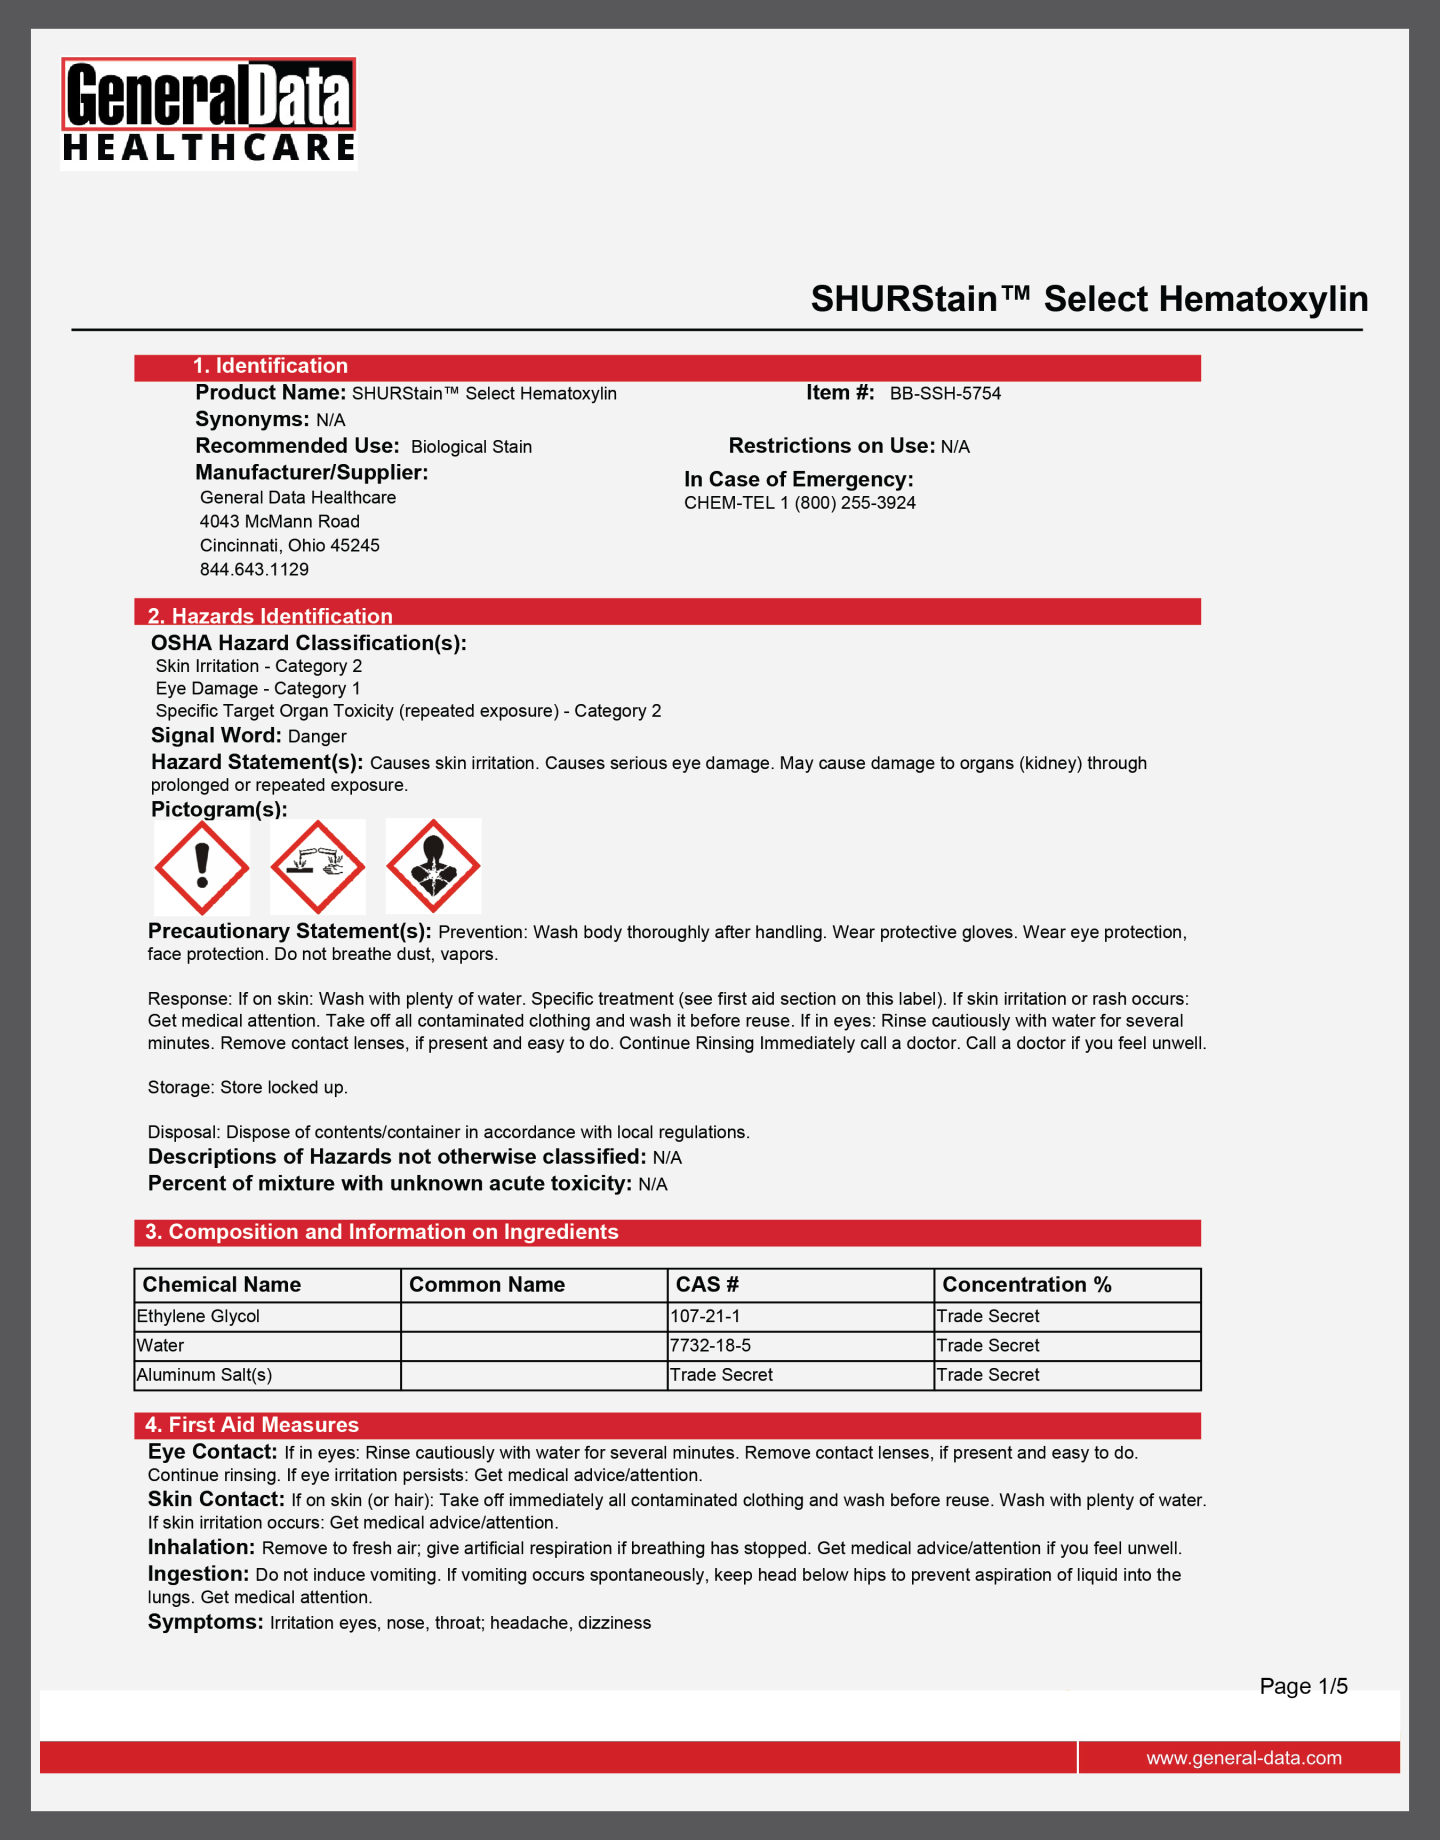 SHURStain Select Hematoxylin Safety Data Sheet 